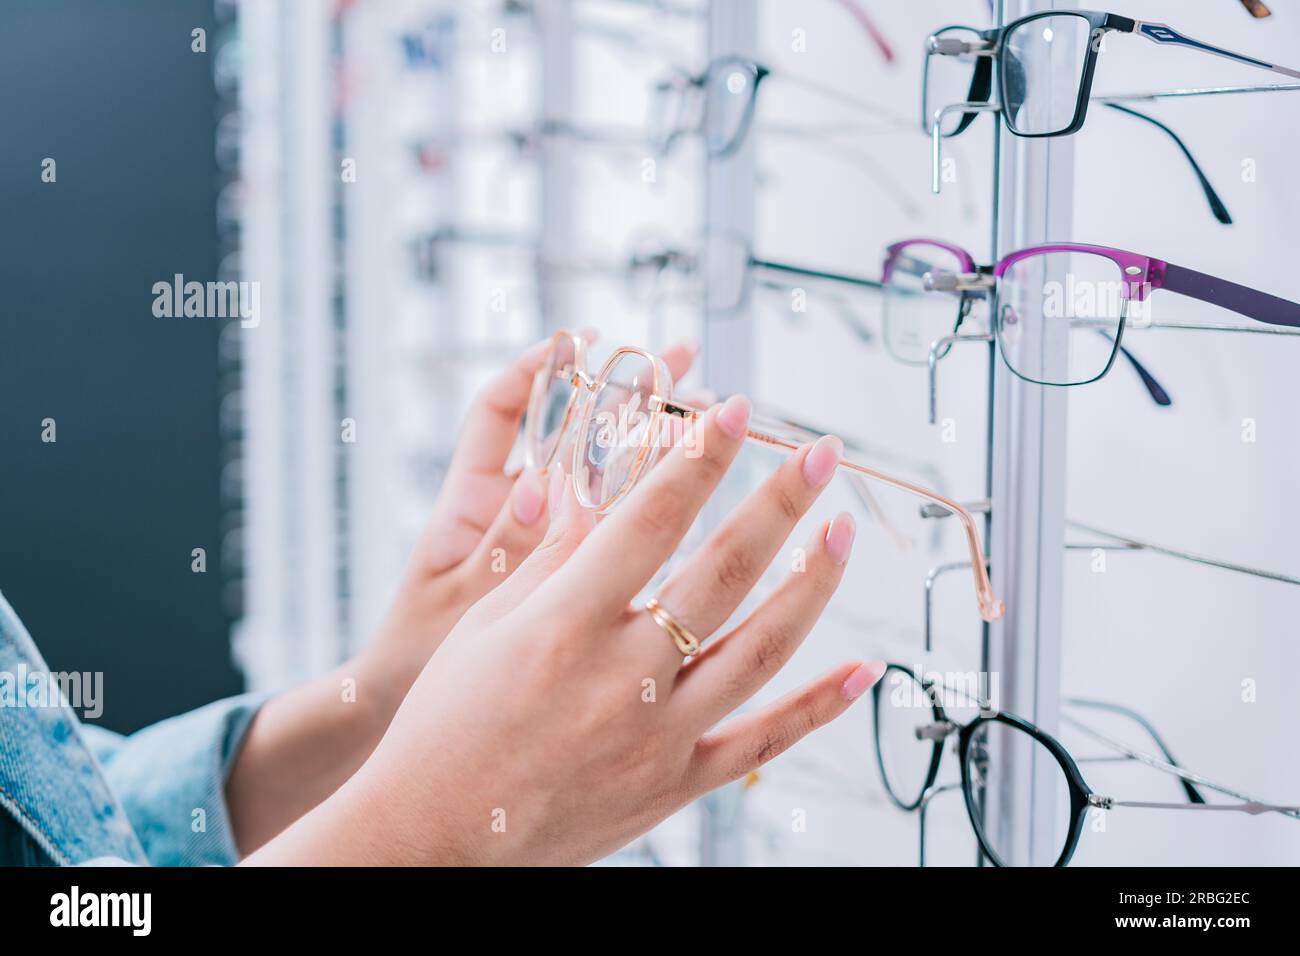 Acquirente donna che sceglie gli occhiali in un negozio. Cliente femminile che sceglie gli occhiali in un negozio di ottica, Girl Hands sceglie gli occhiali in un negozio Foto Stock